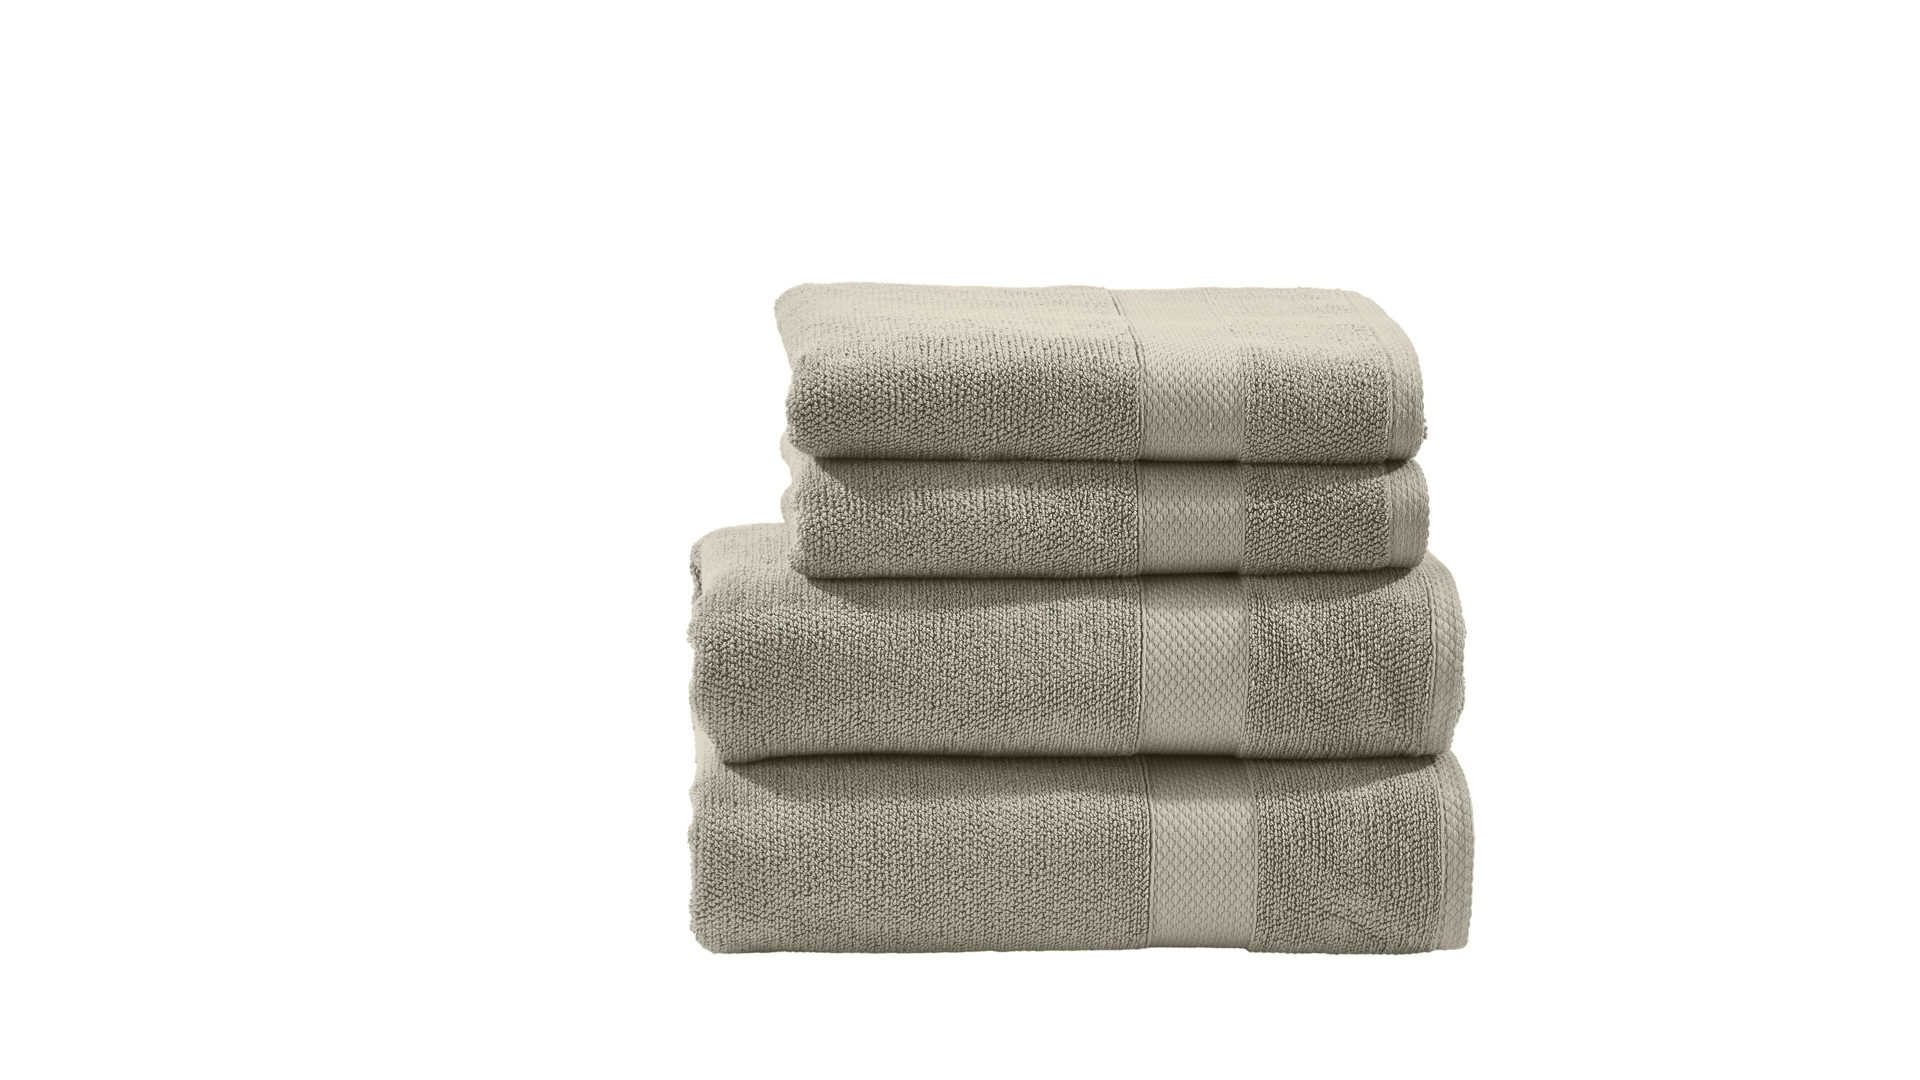 Handtuch-Set Done.® aus Stoff in Beige done.® Handtuch-Set Deluxe - Heimtextilien taupefarbene Baumwolle – vierteilig